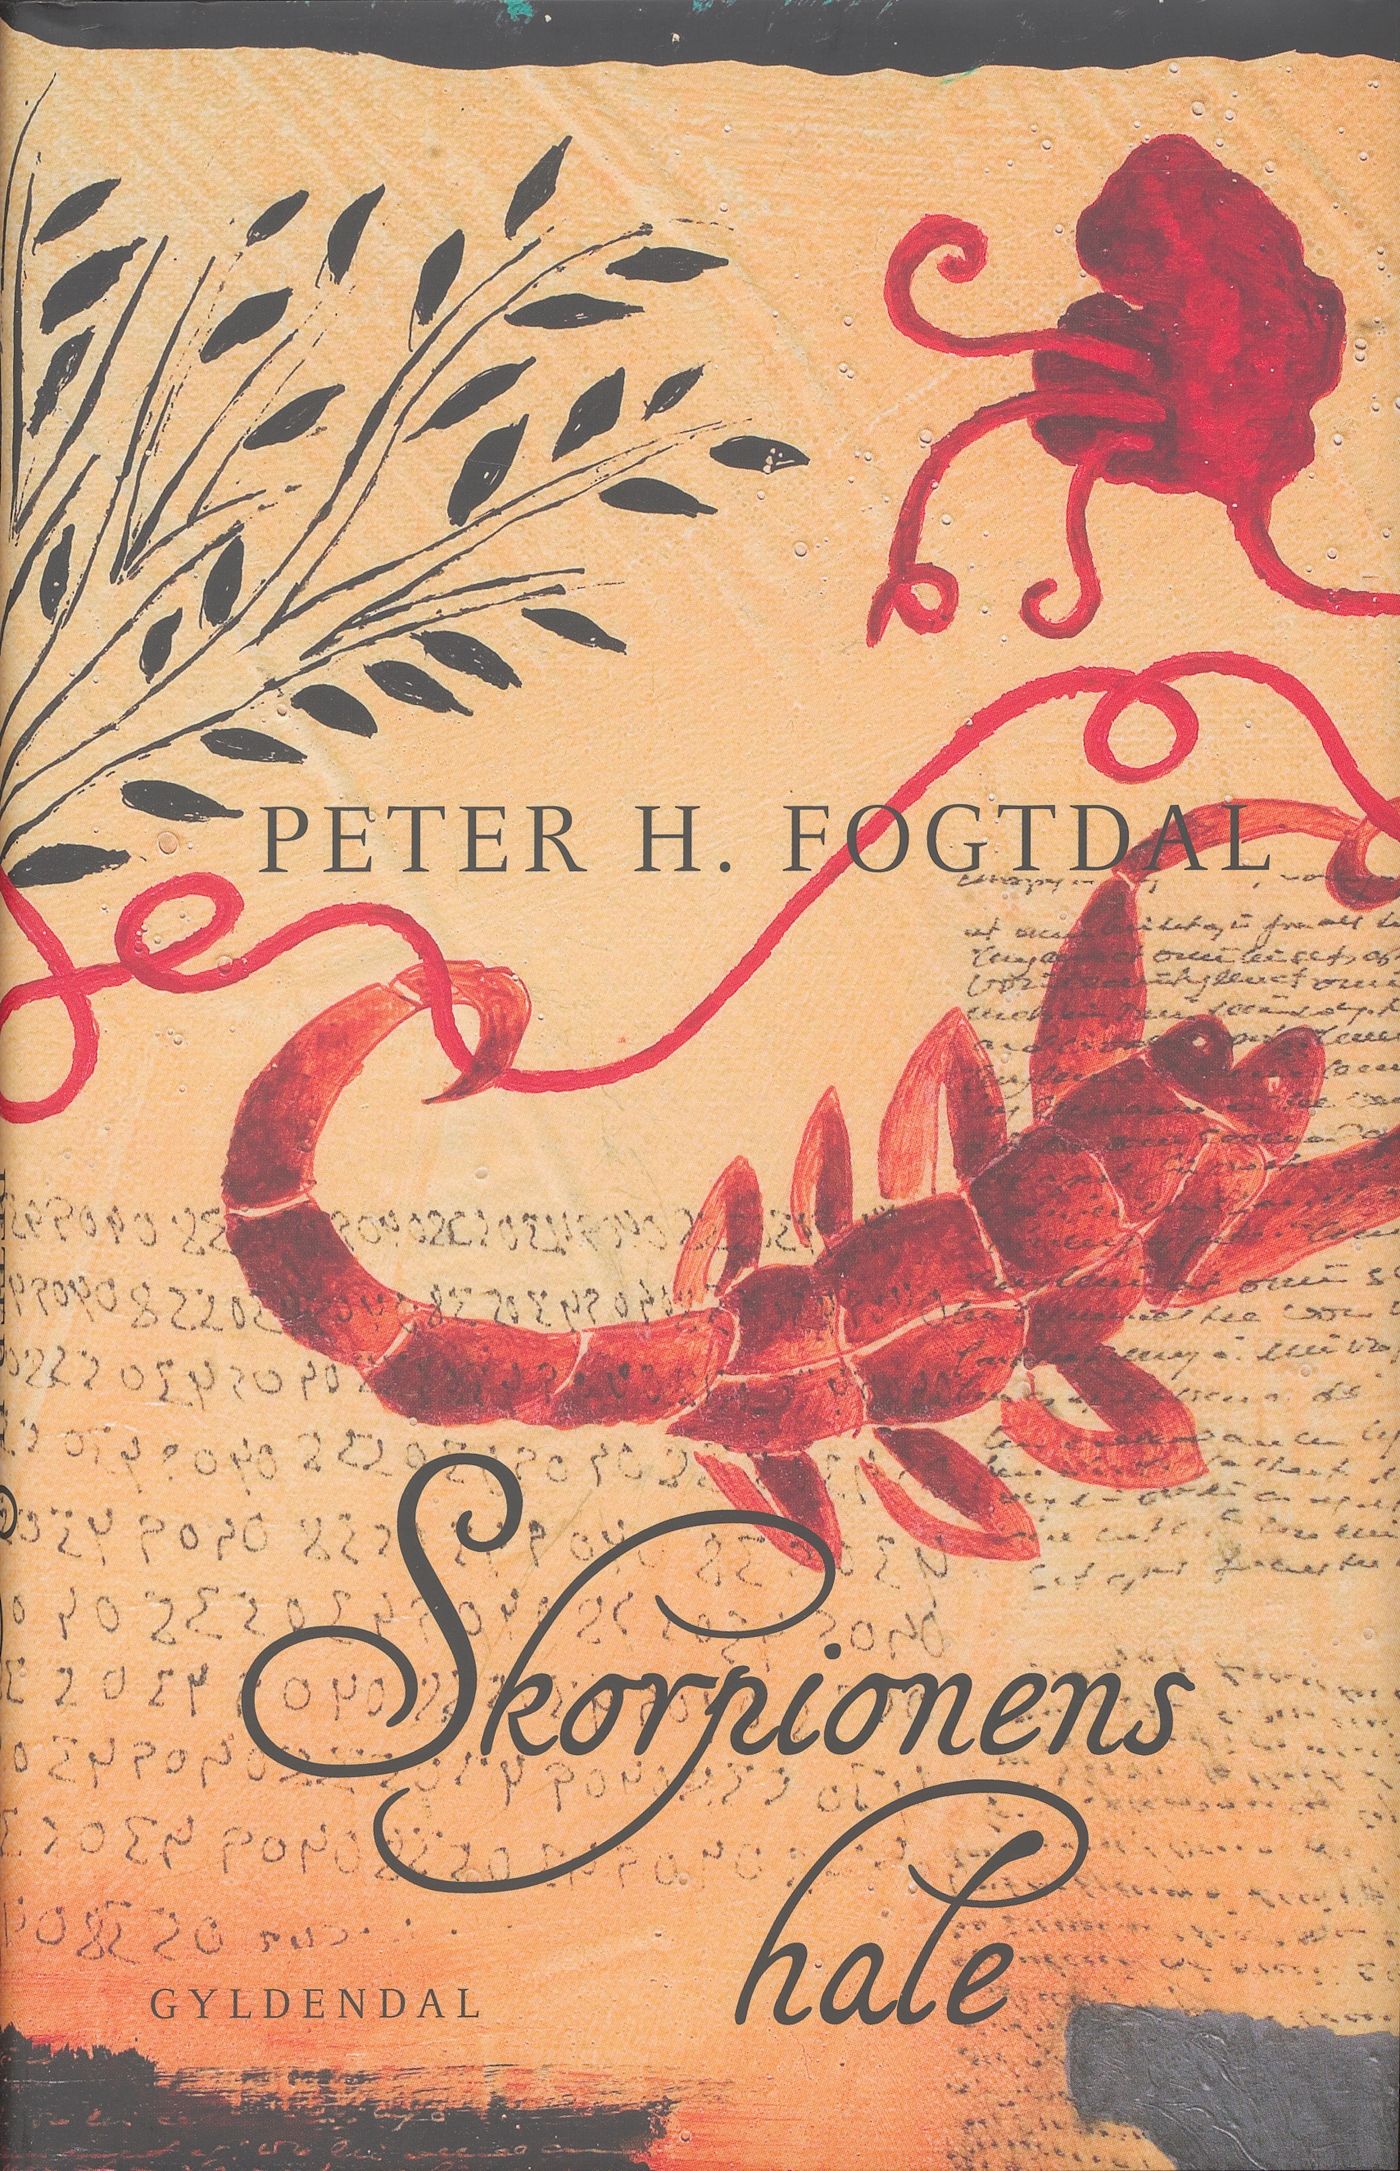 Skorpionens hale, e-bok av Peter H. Fogtdal